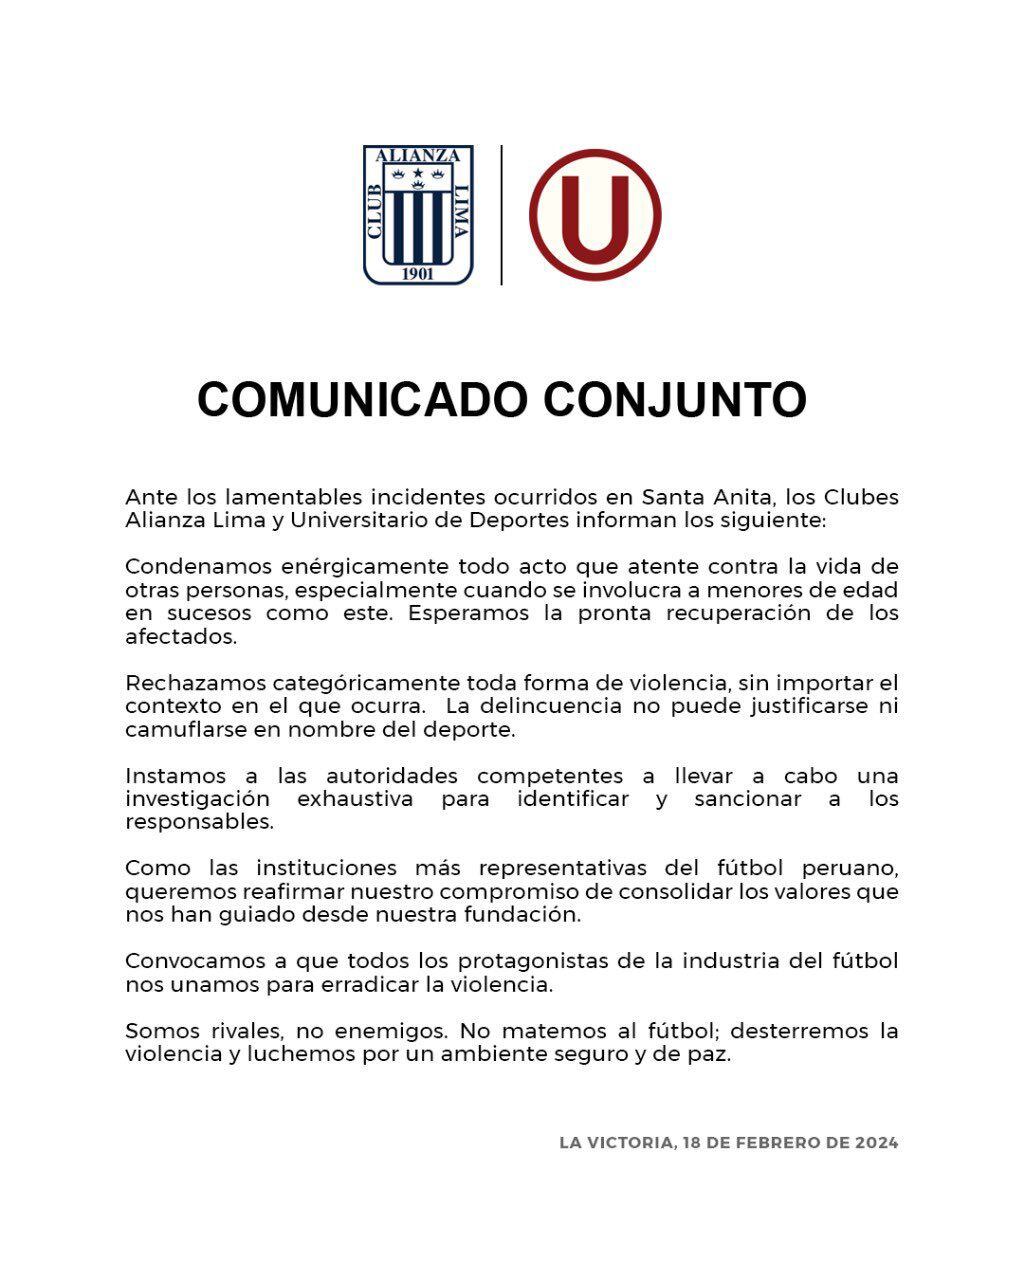 Comunicado conjunto entre Universitario y Alianza Lima después de la balacera en Santa Anita.